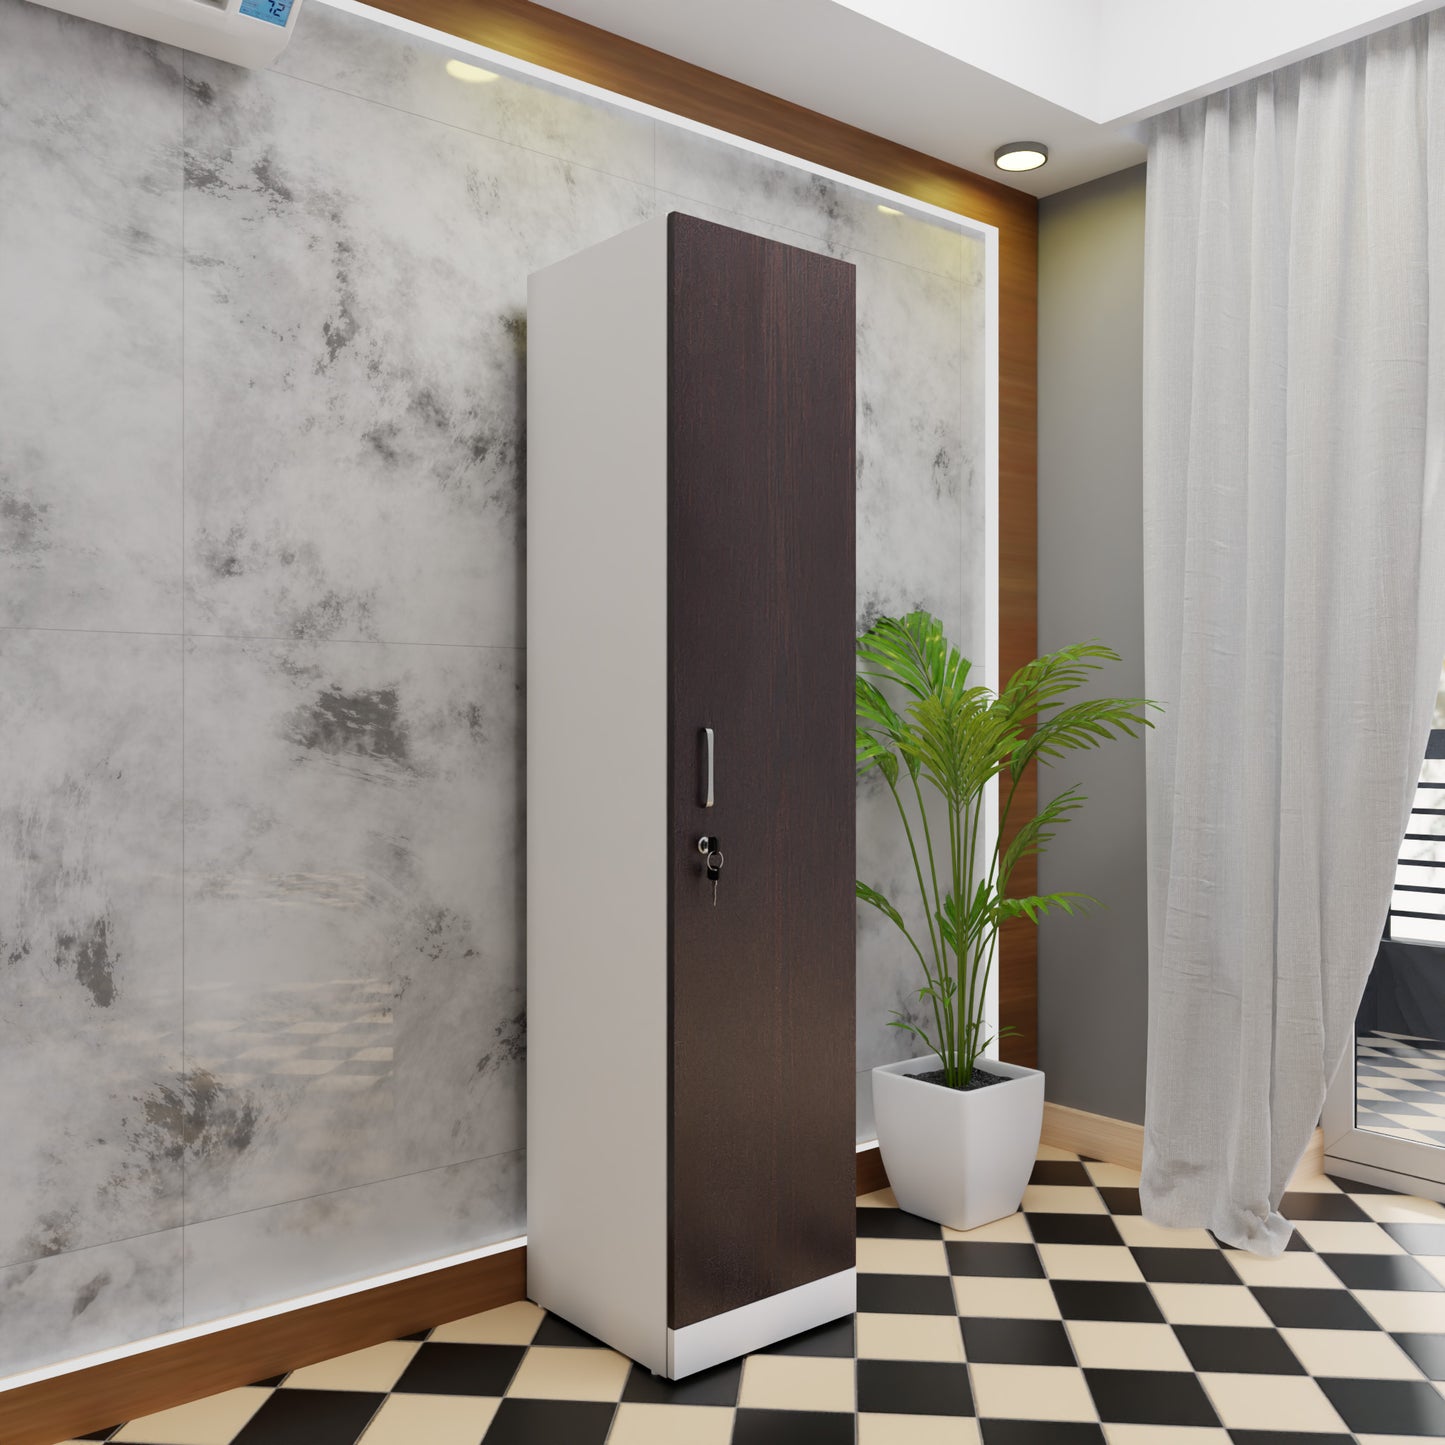 AVIRA |Wardrobe, Hinged | 2 Door & Dual Color Wardrobes VIKI FURNITURE Frosty White & Dark Wenge  